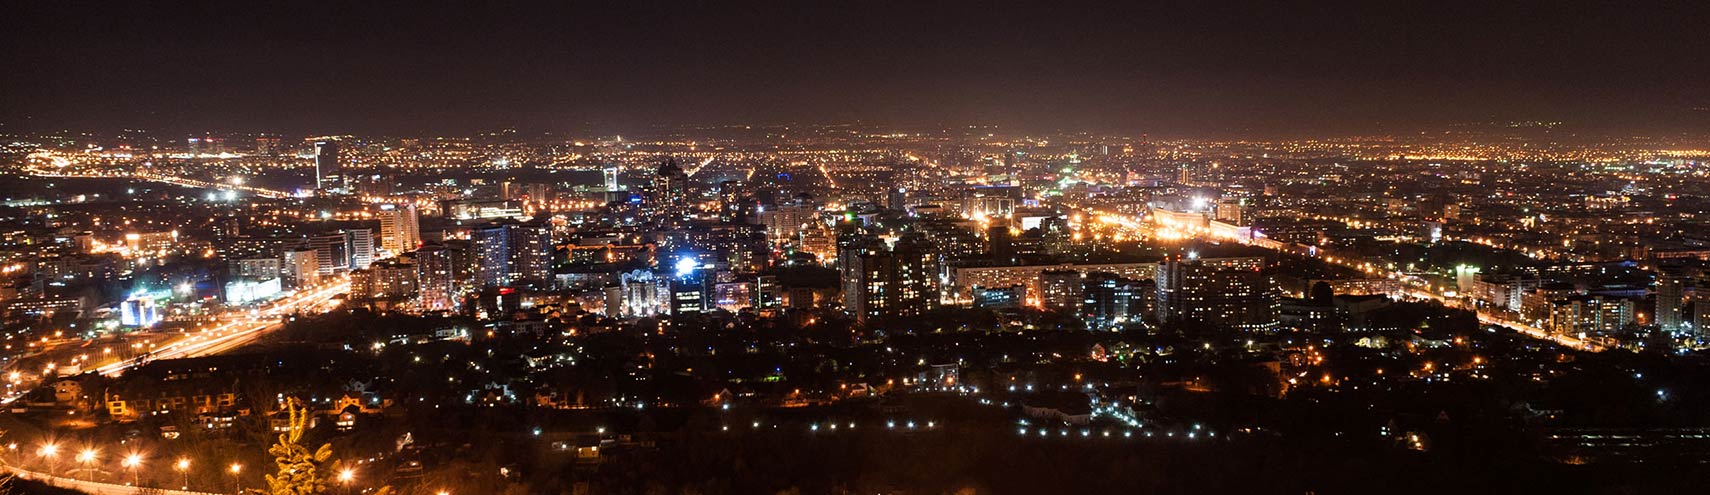 Ночная панорама Алматы